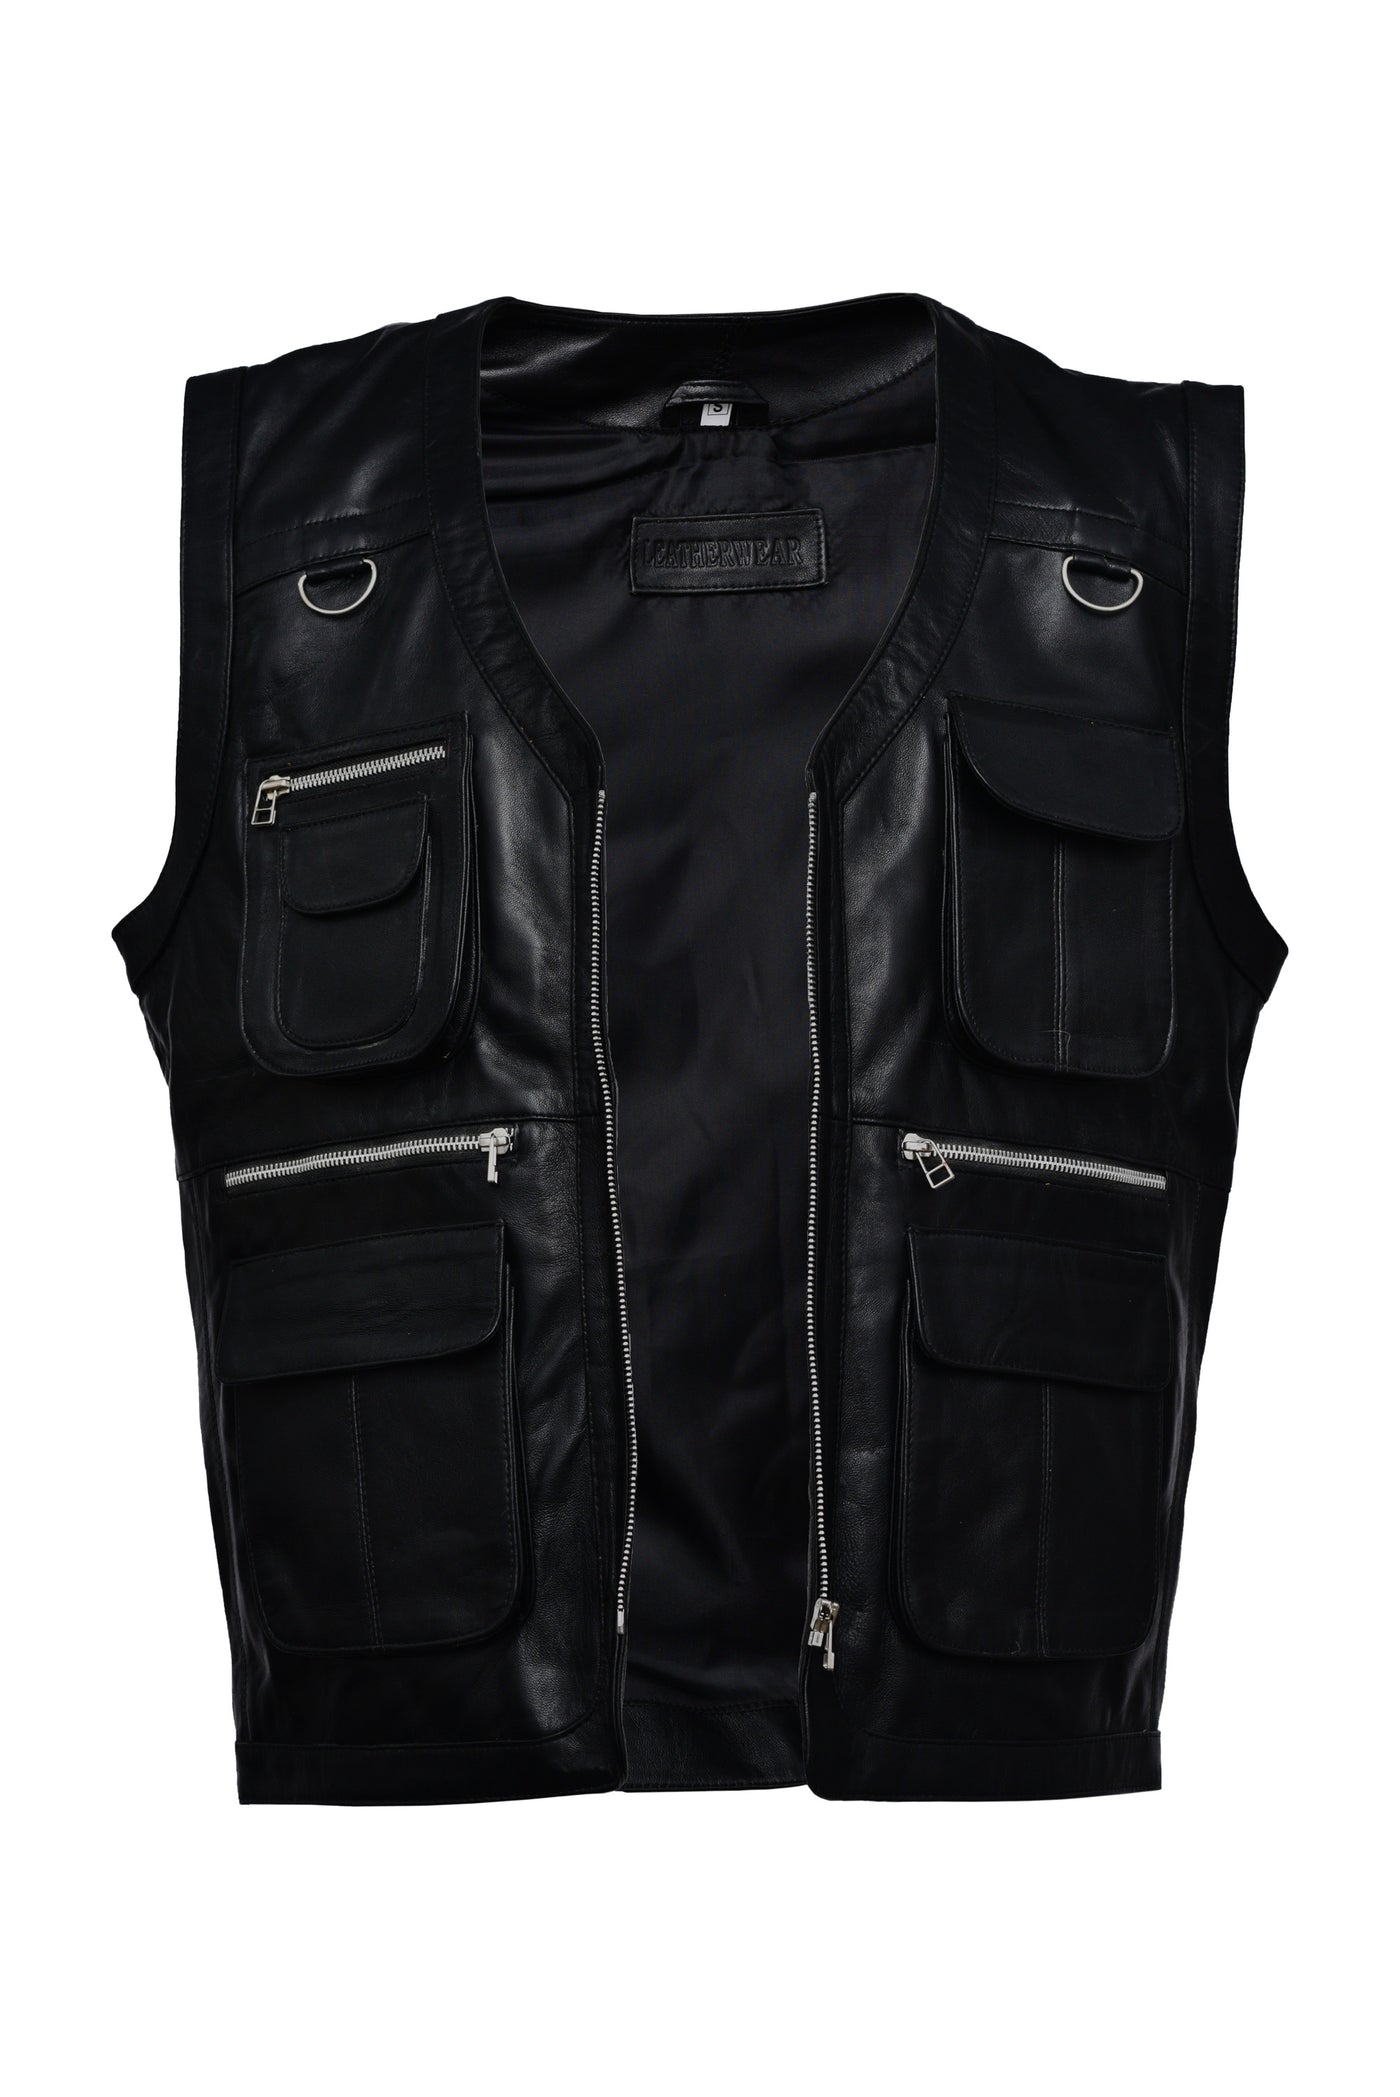 Online Black Leather Vest